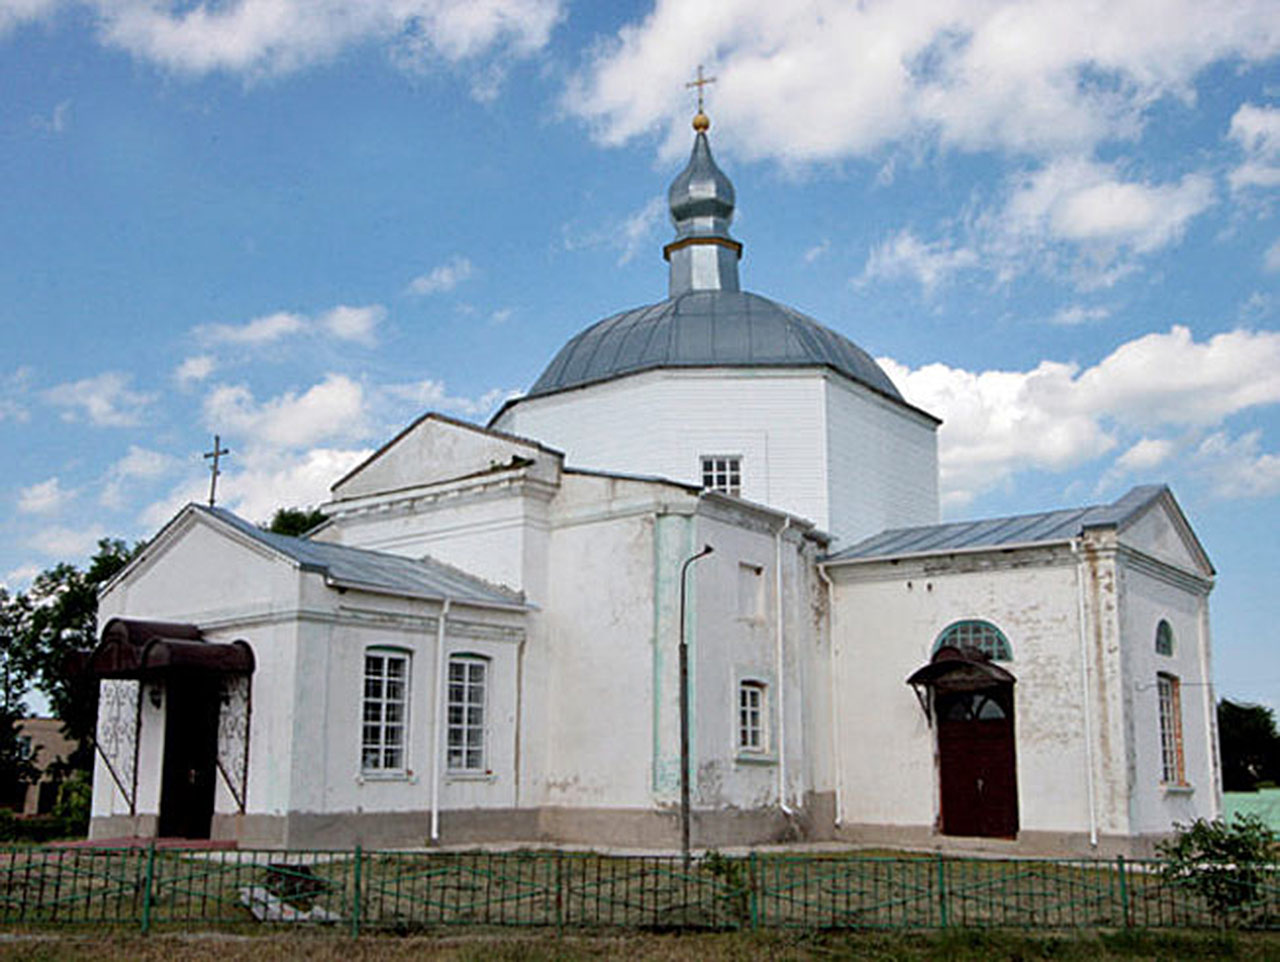 Kamienna cerkiew Wniebowzięcia Najświętszej Maryi Panny z 1821 roku w Piatyhorach. Źródło - ukrainaincognita.com